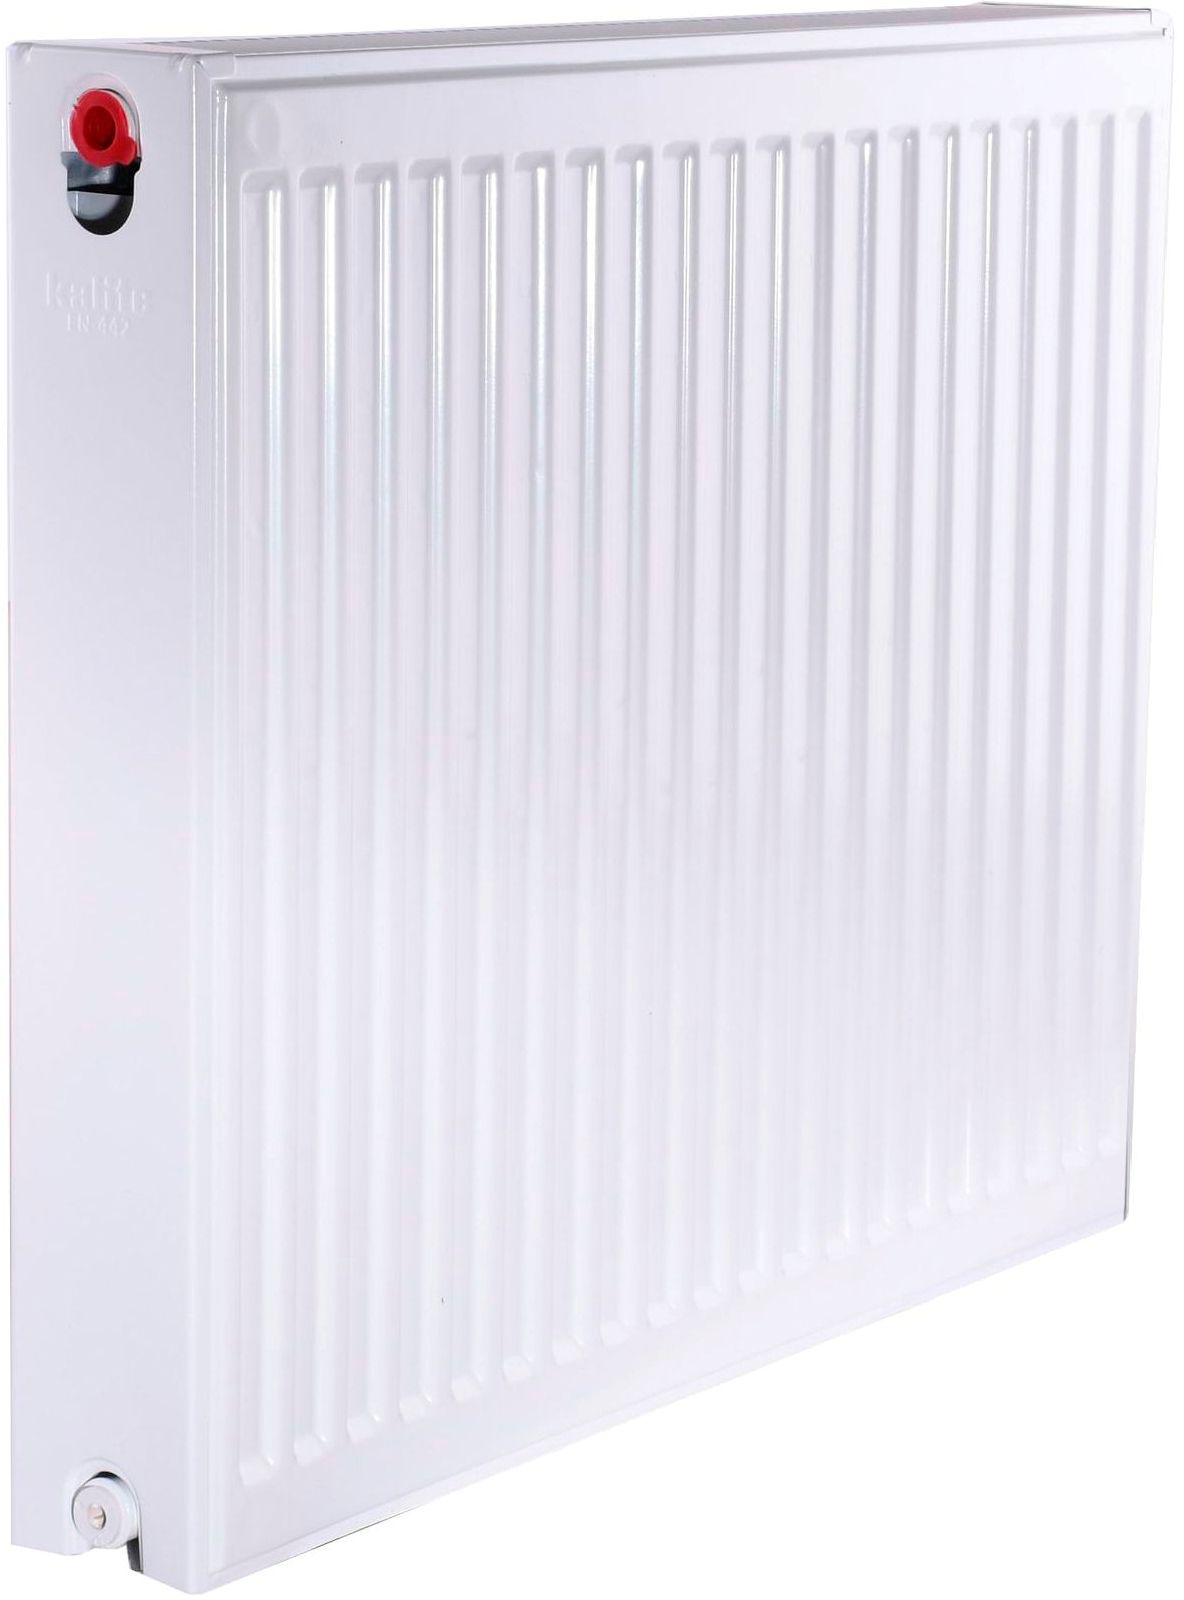 Радиатор для отопления Kalite 22 бок 600x700